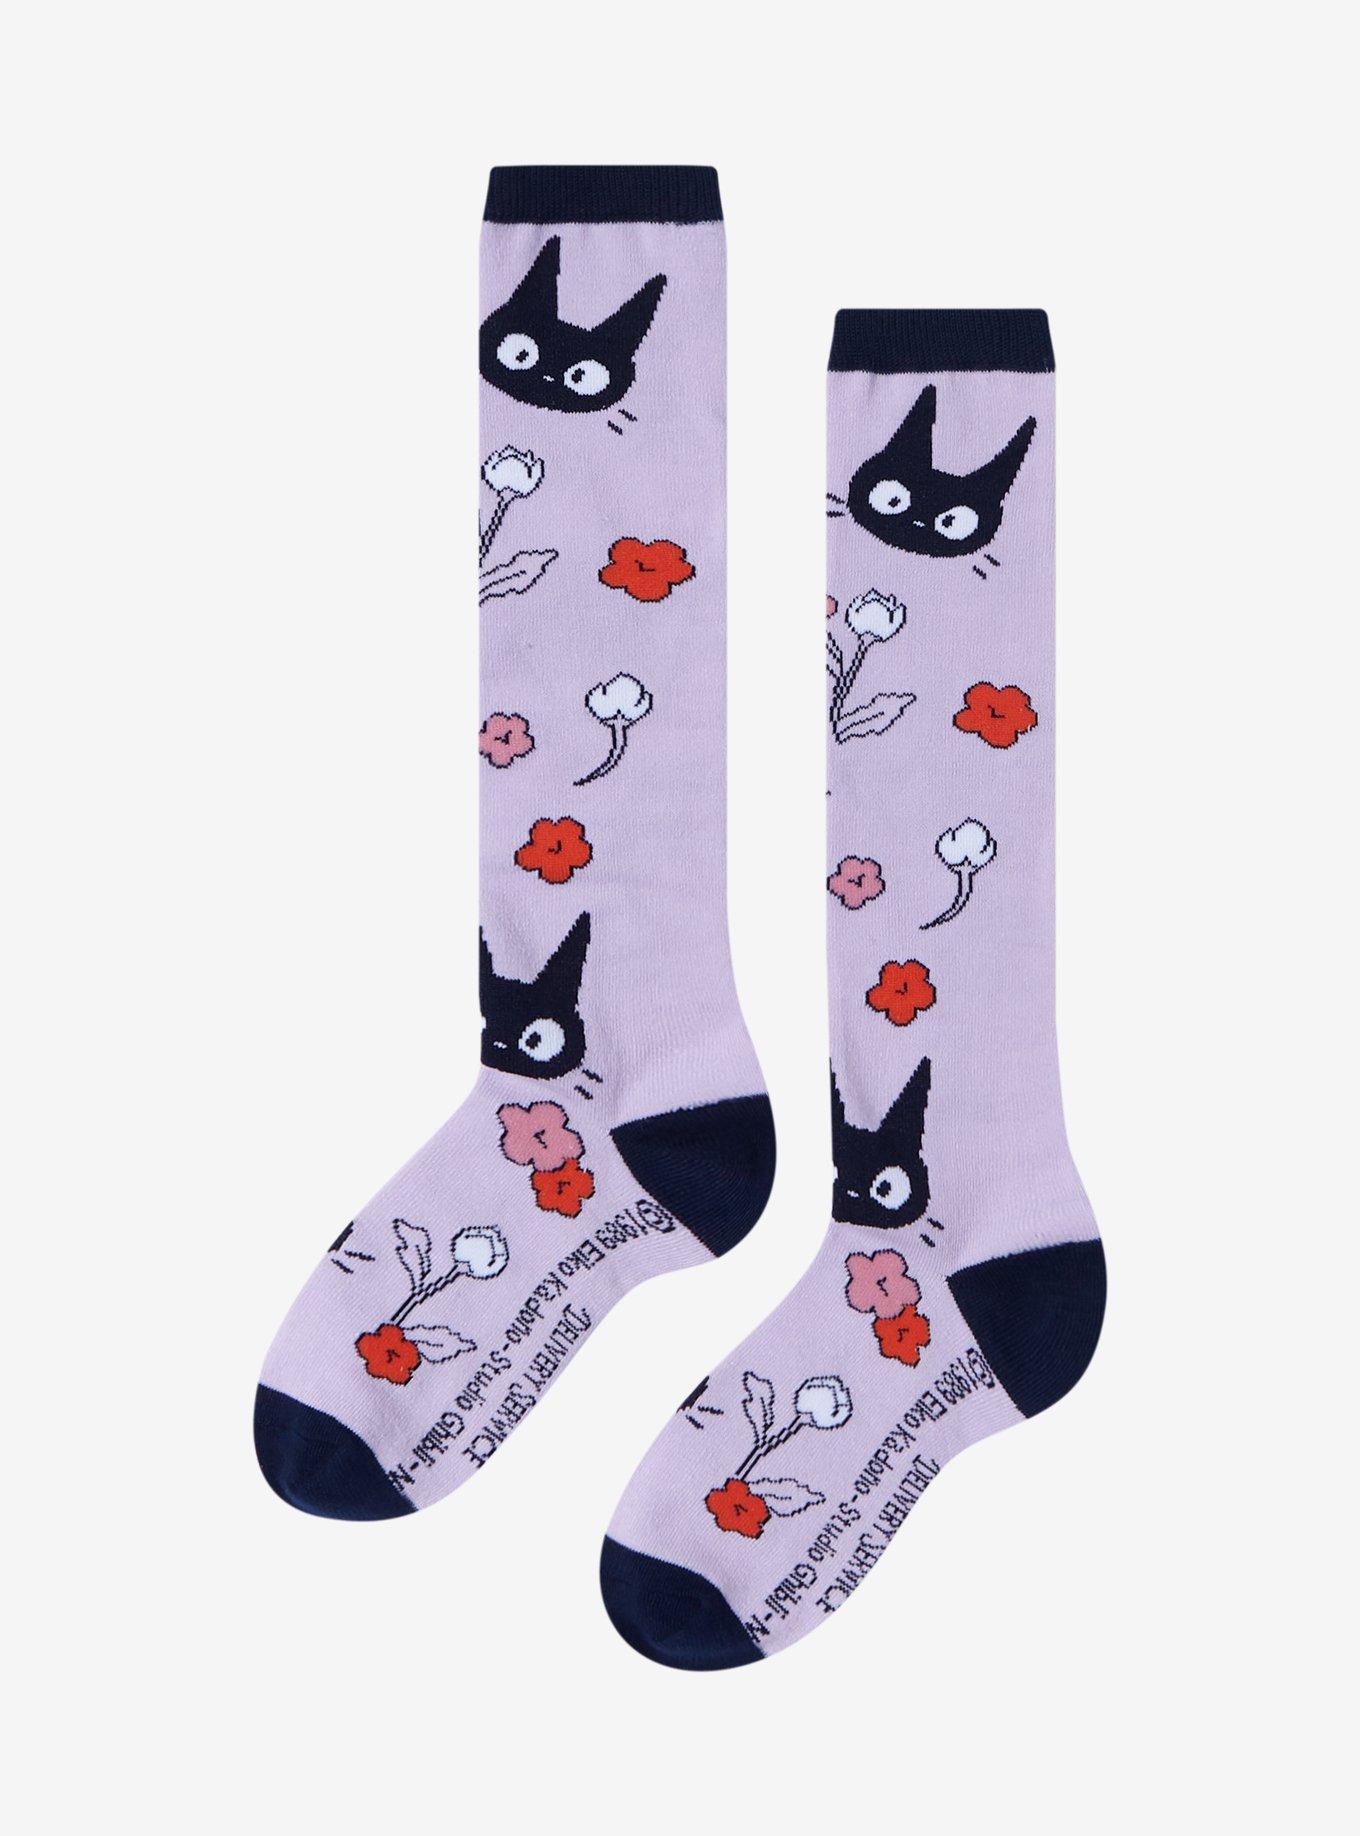 Studio Ghibli Kiki's Delivery Service Jiji Floral Lavender Knee-High Socks, , alternate